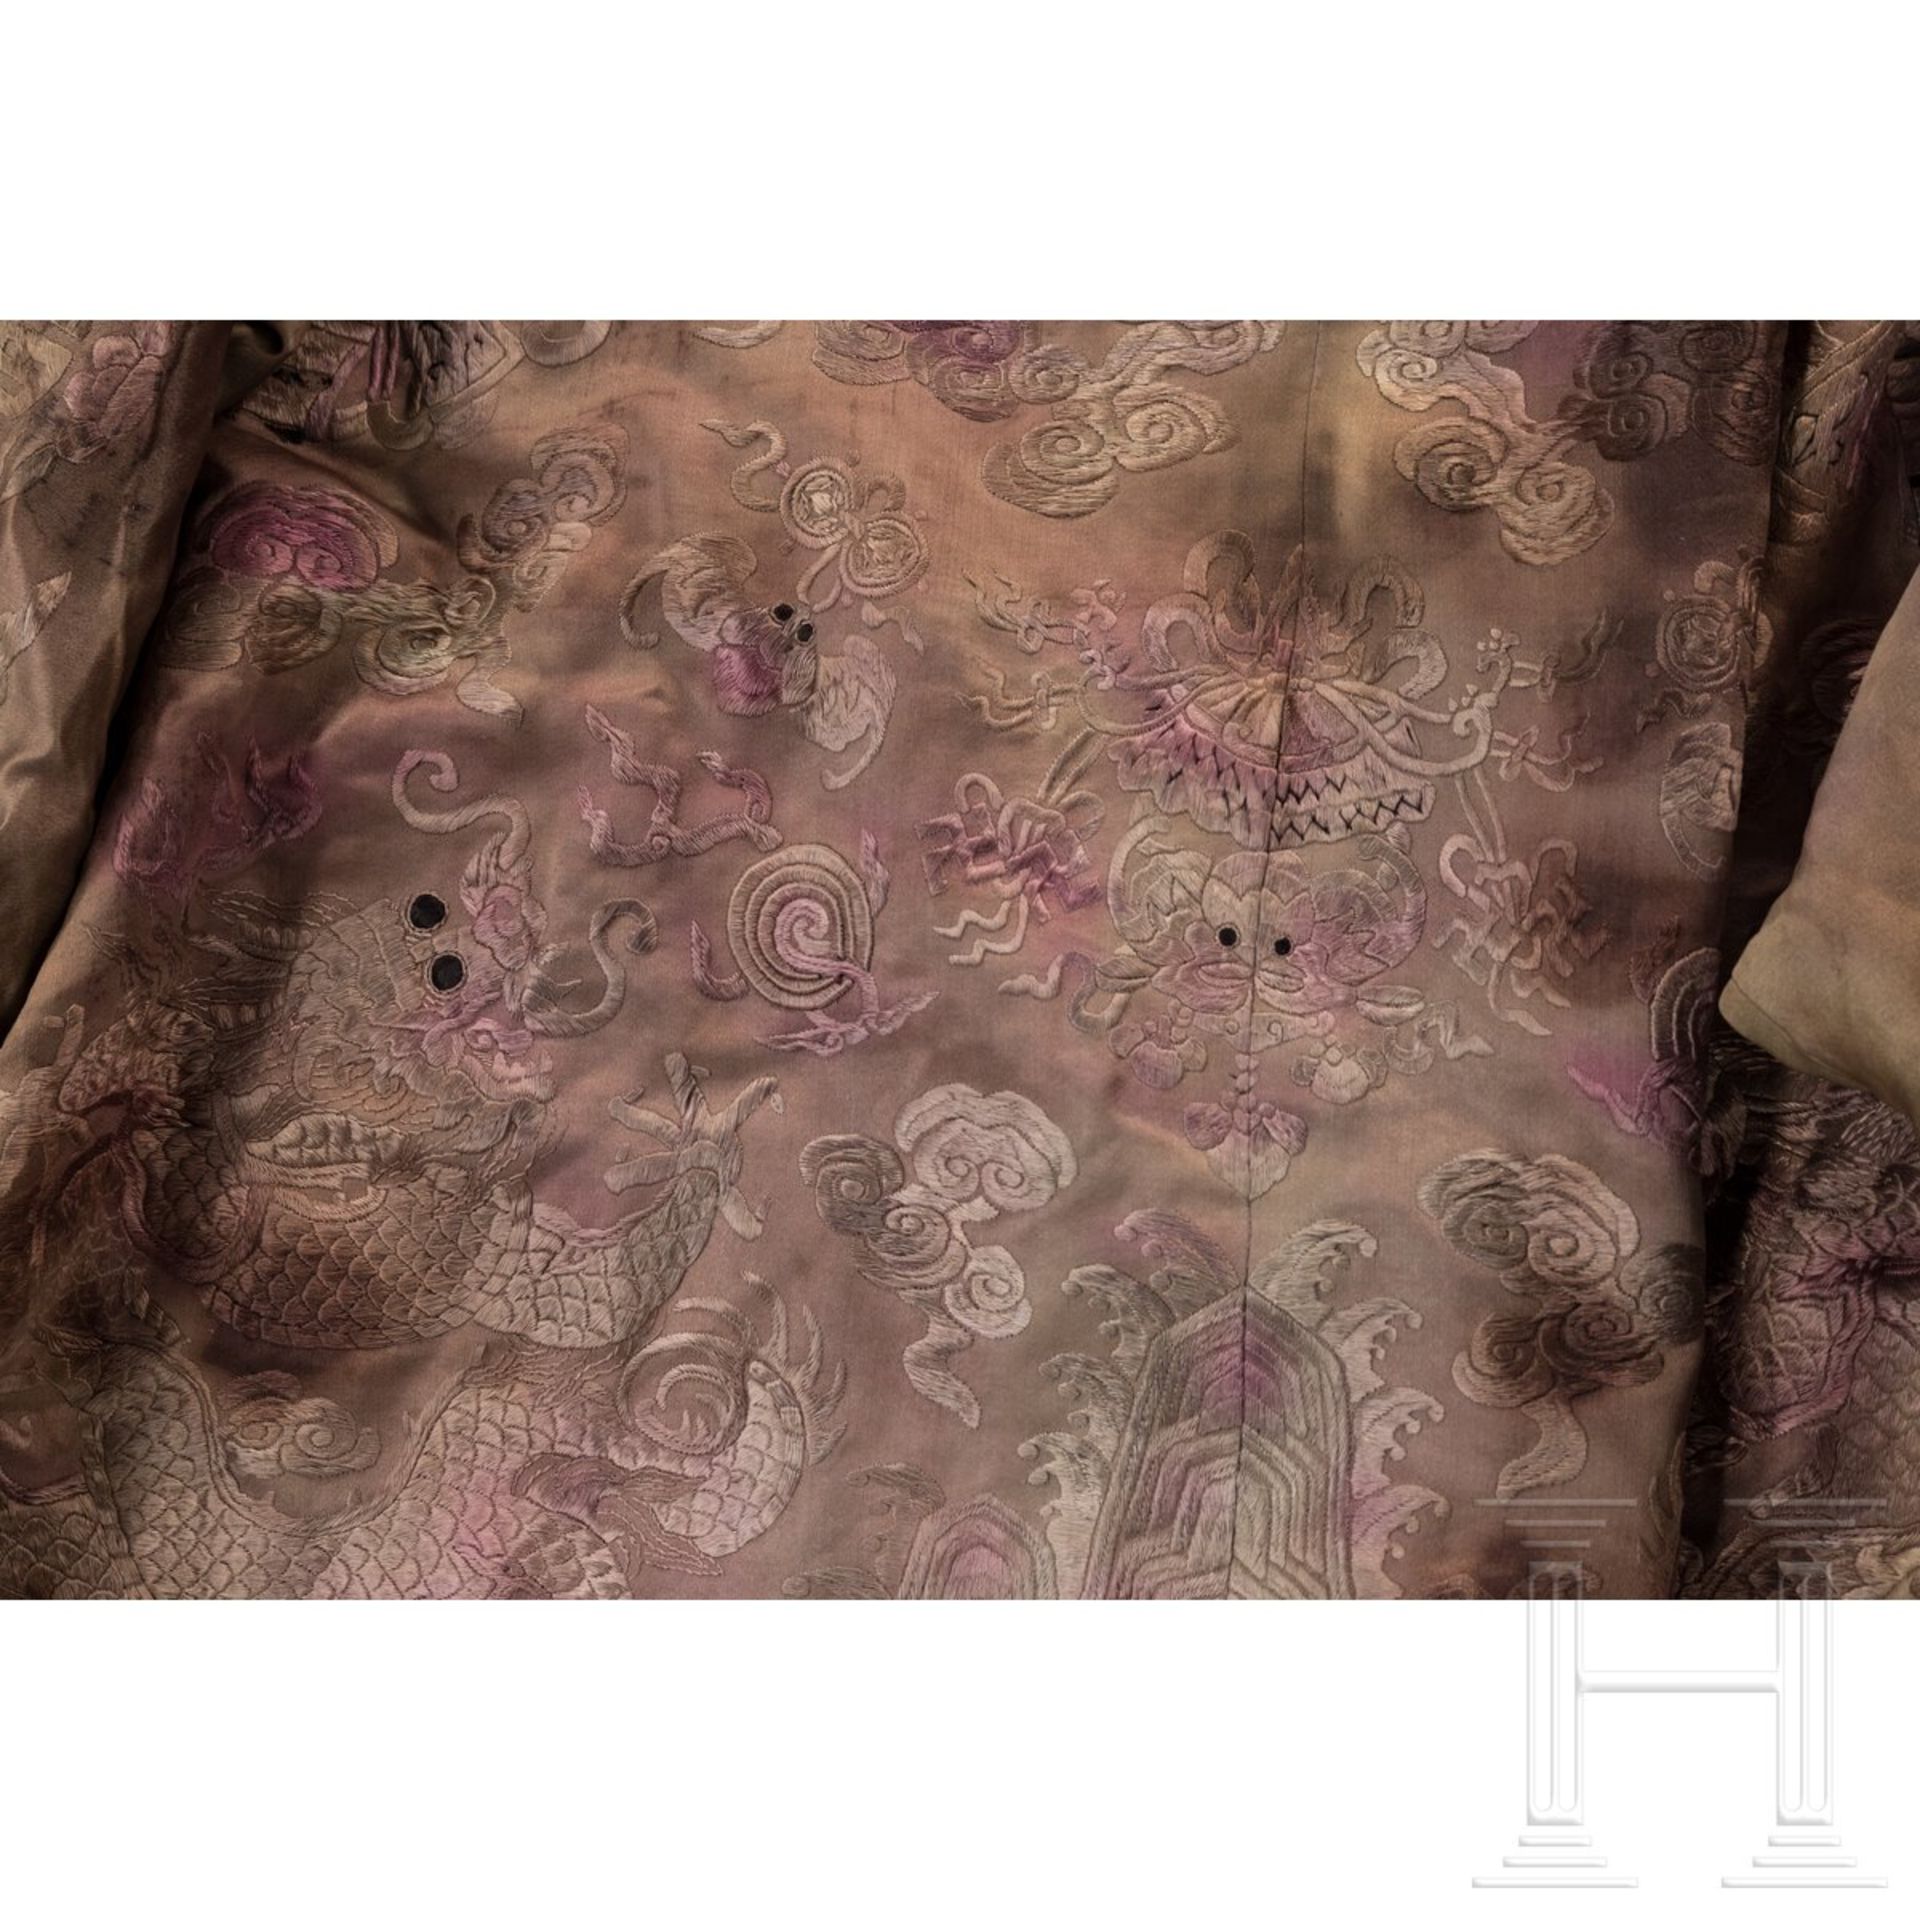 Aufwendig bestickte Damenrobe aus der kaiserlichen Familie, China, Ming-Dynastie oder später - Bild 6 aus 8